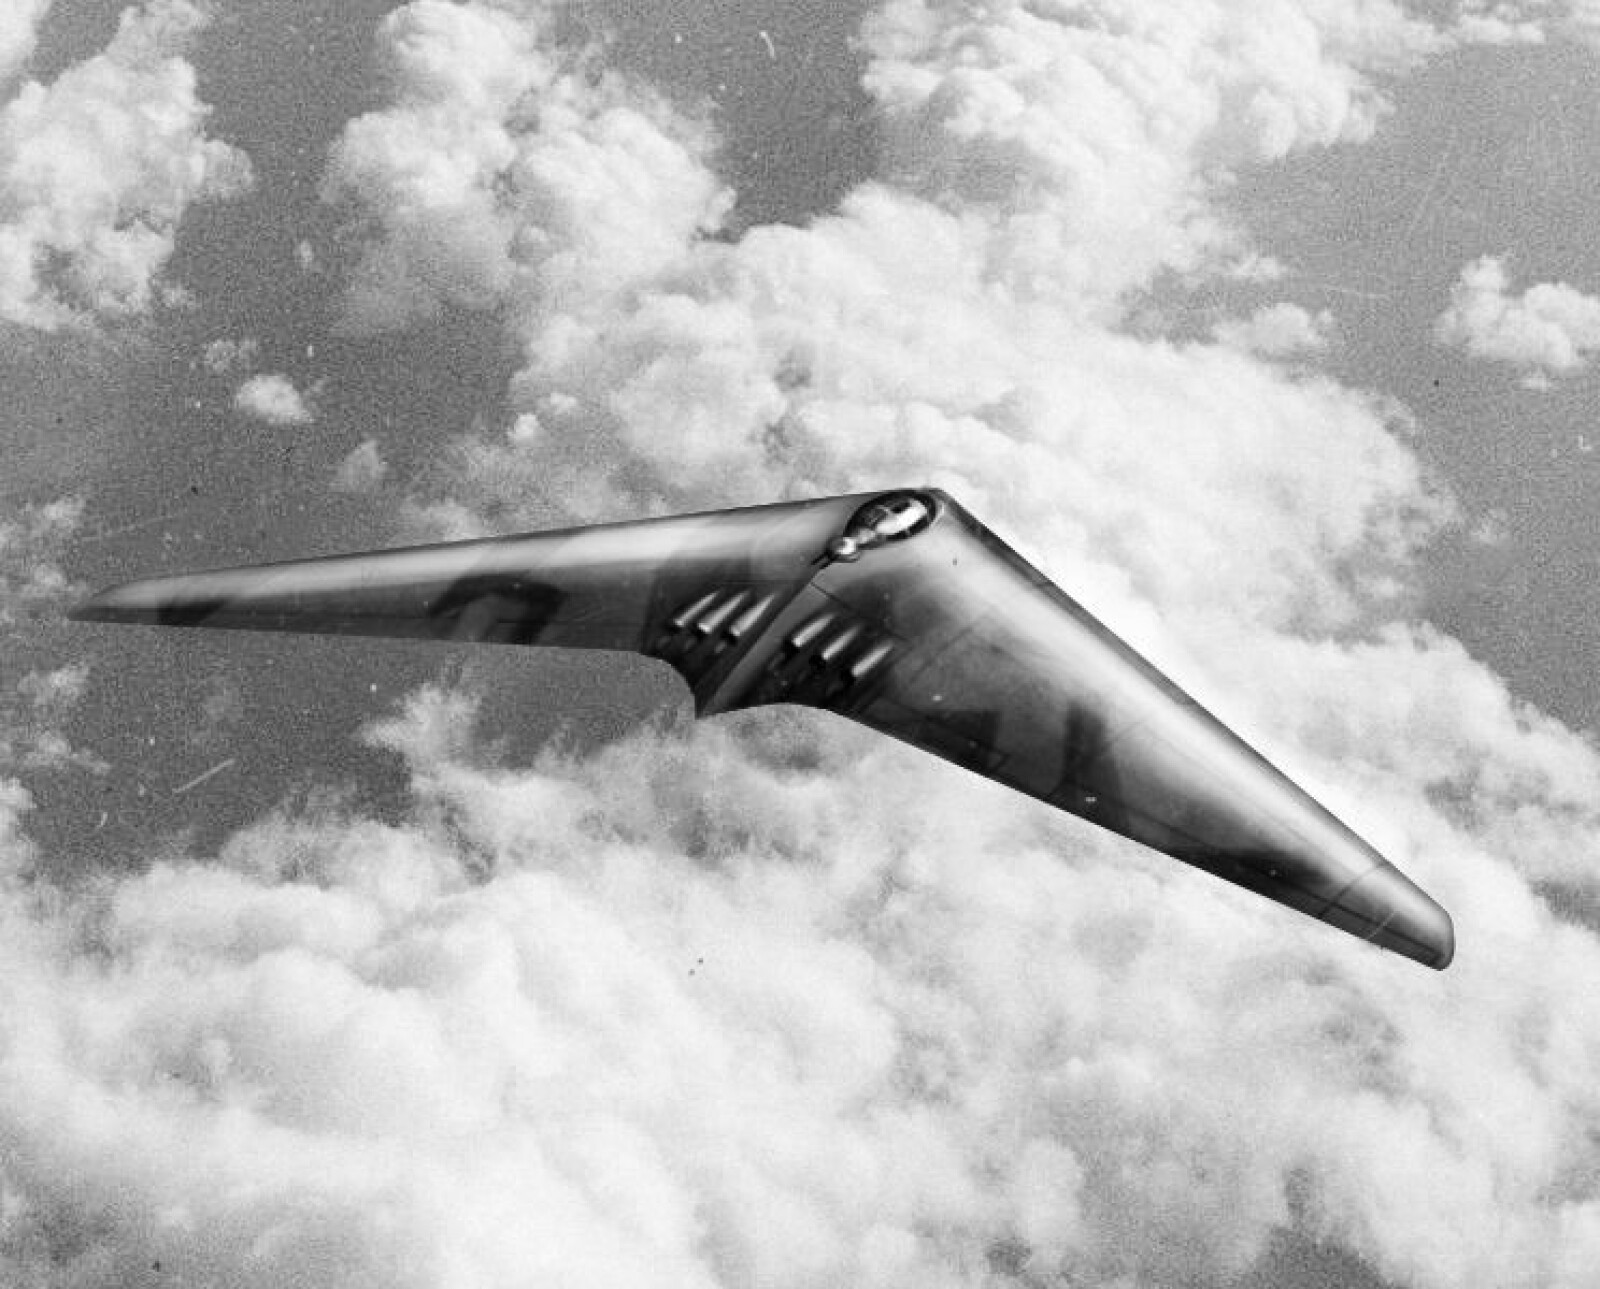 <b><SPAN CLASS=BOLD>1945:</b></span> Horten-brødrenes tegninger endte i flere lovende prototyper som aldri rakk å bli operative bombefly. 